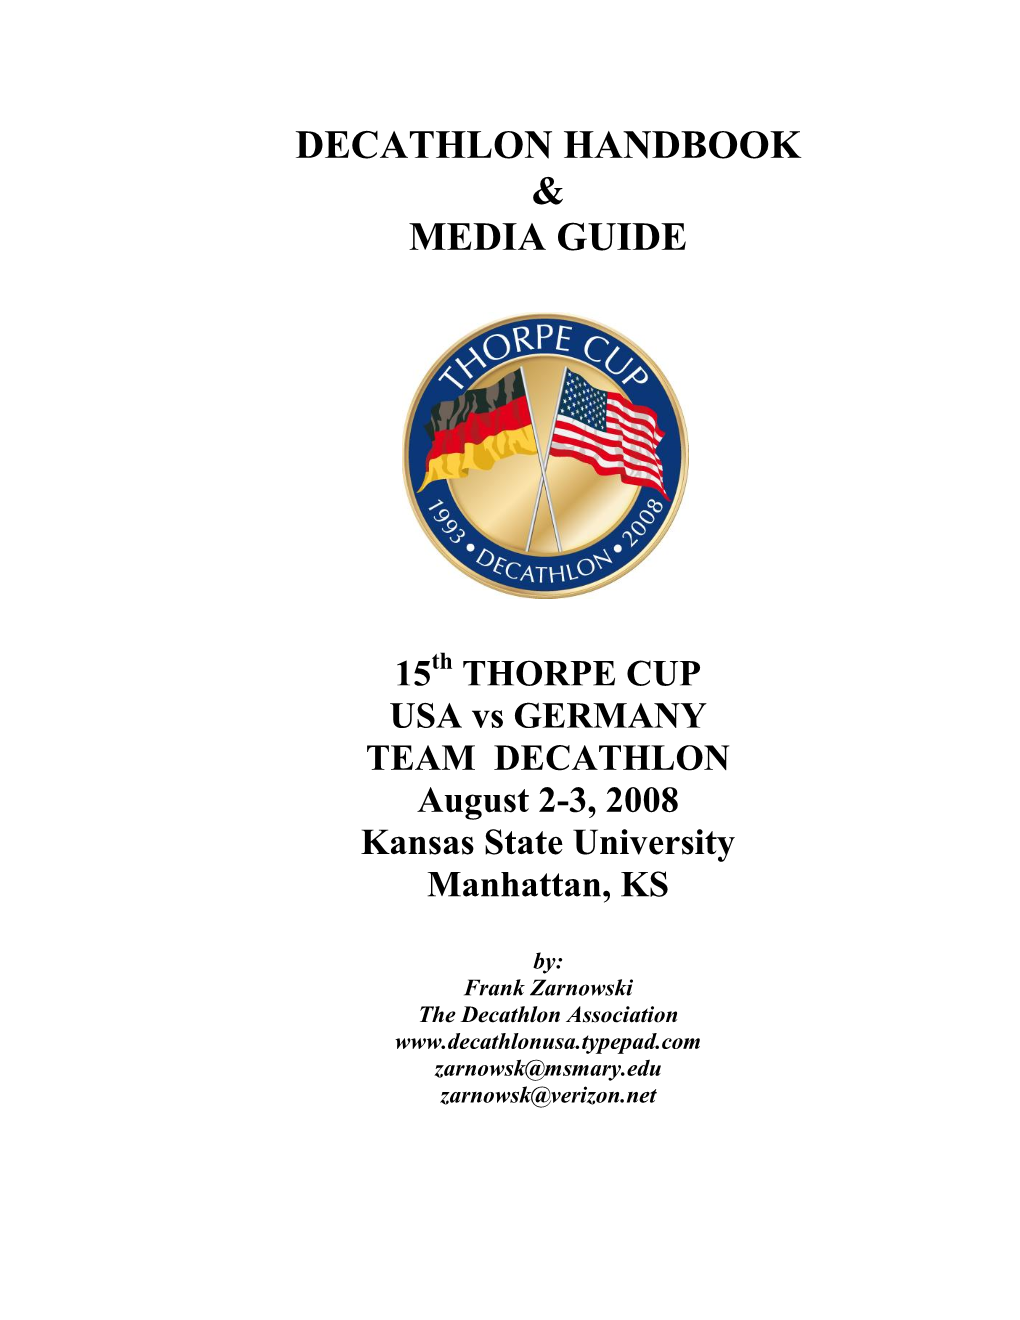 Decathlon Handbook & Media Guide